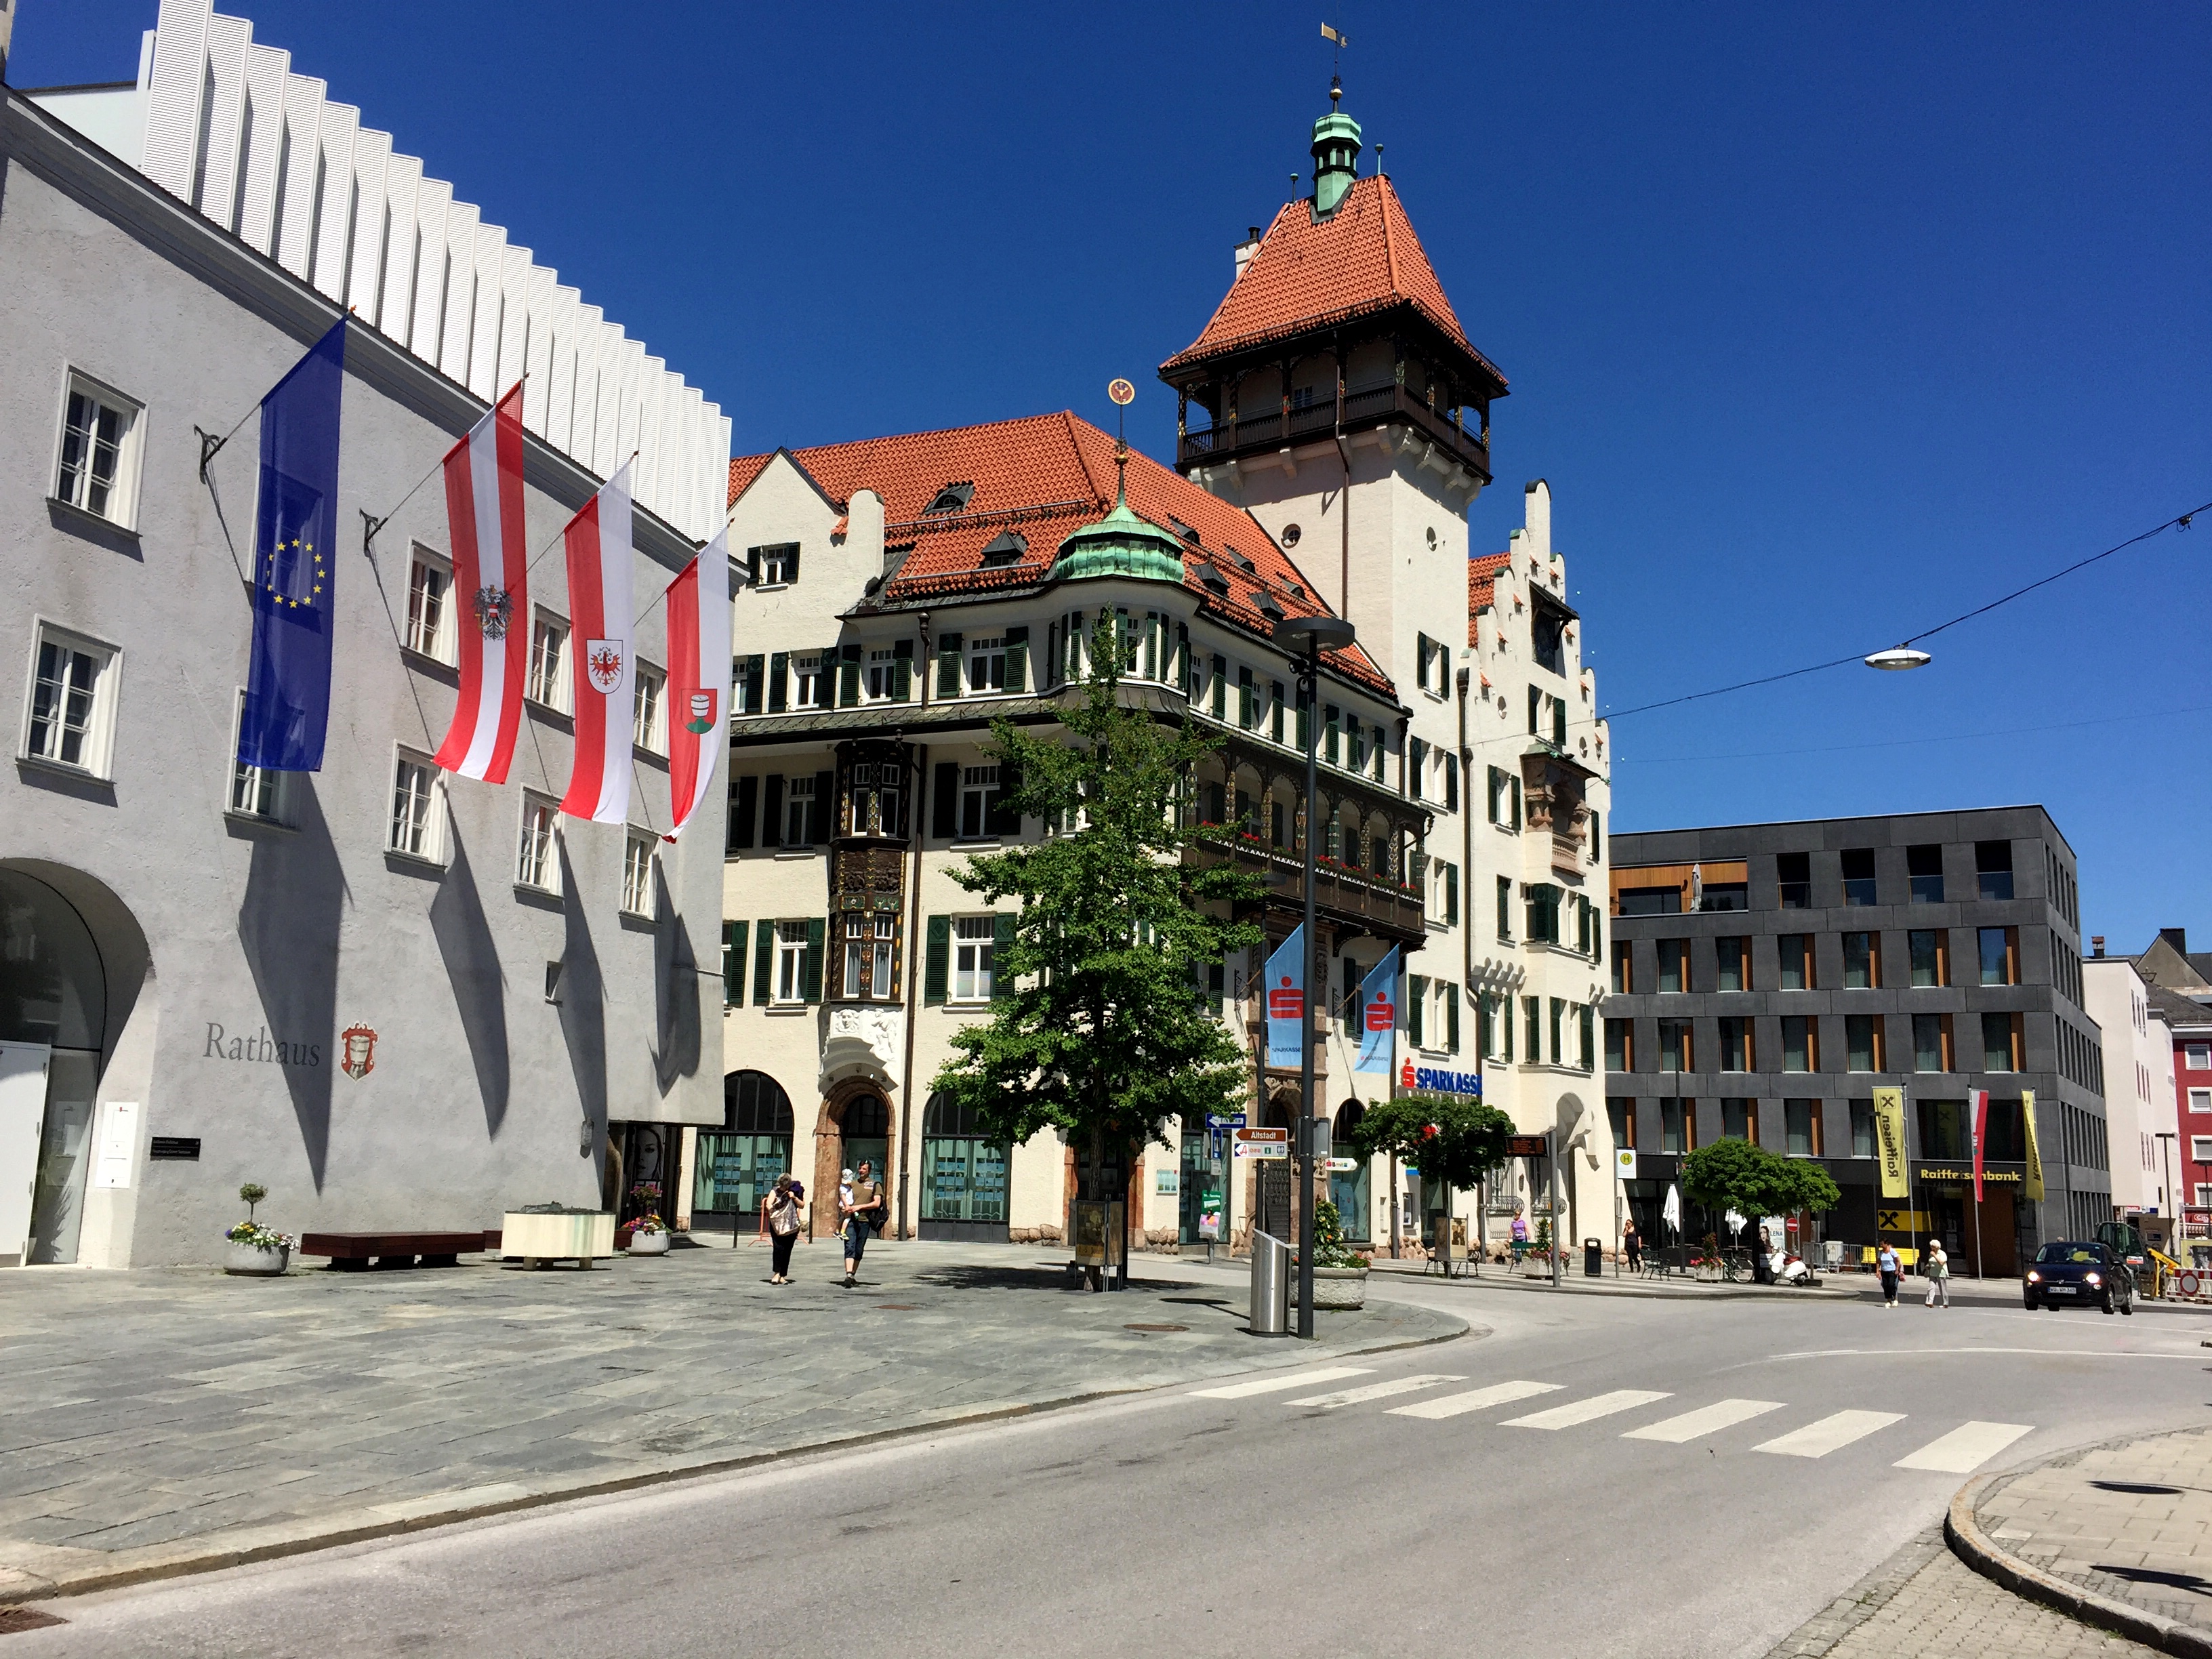 Rathaus Kufstein